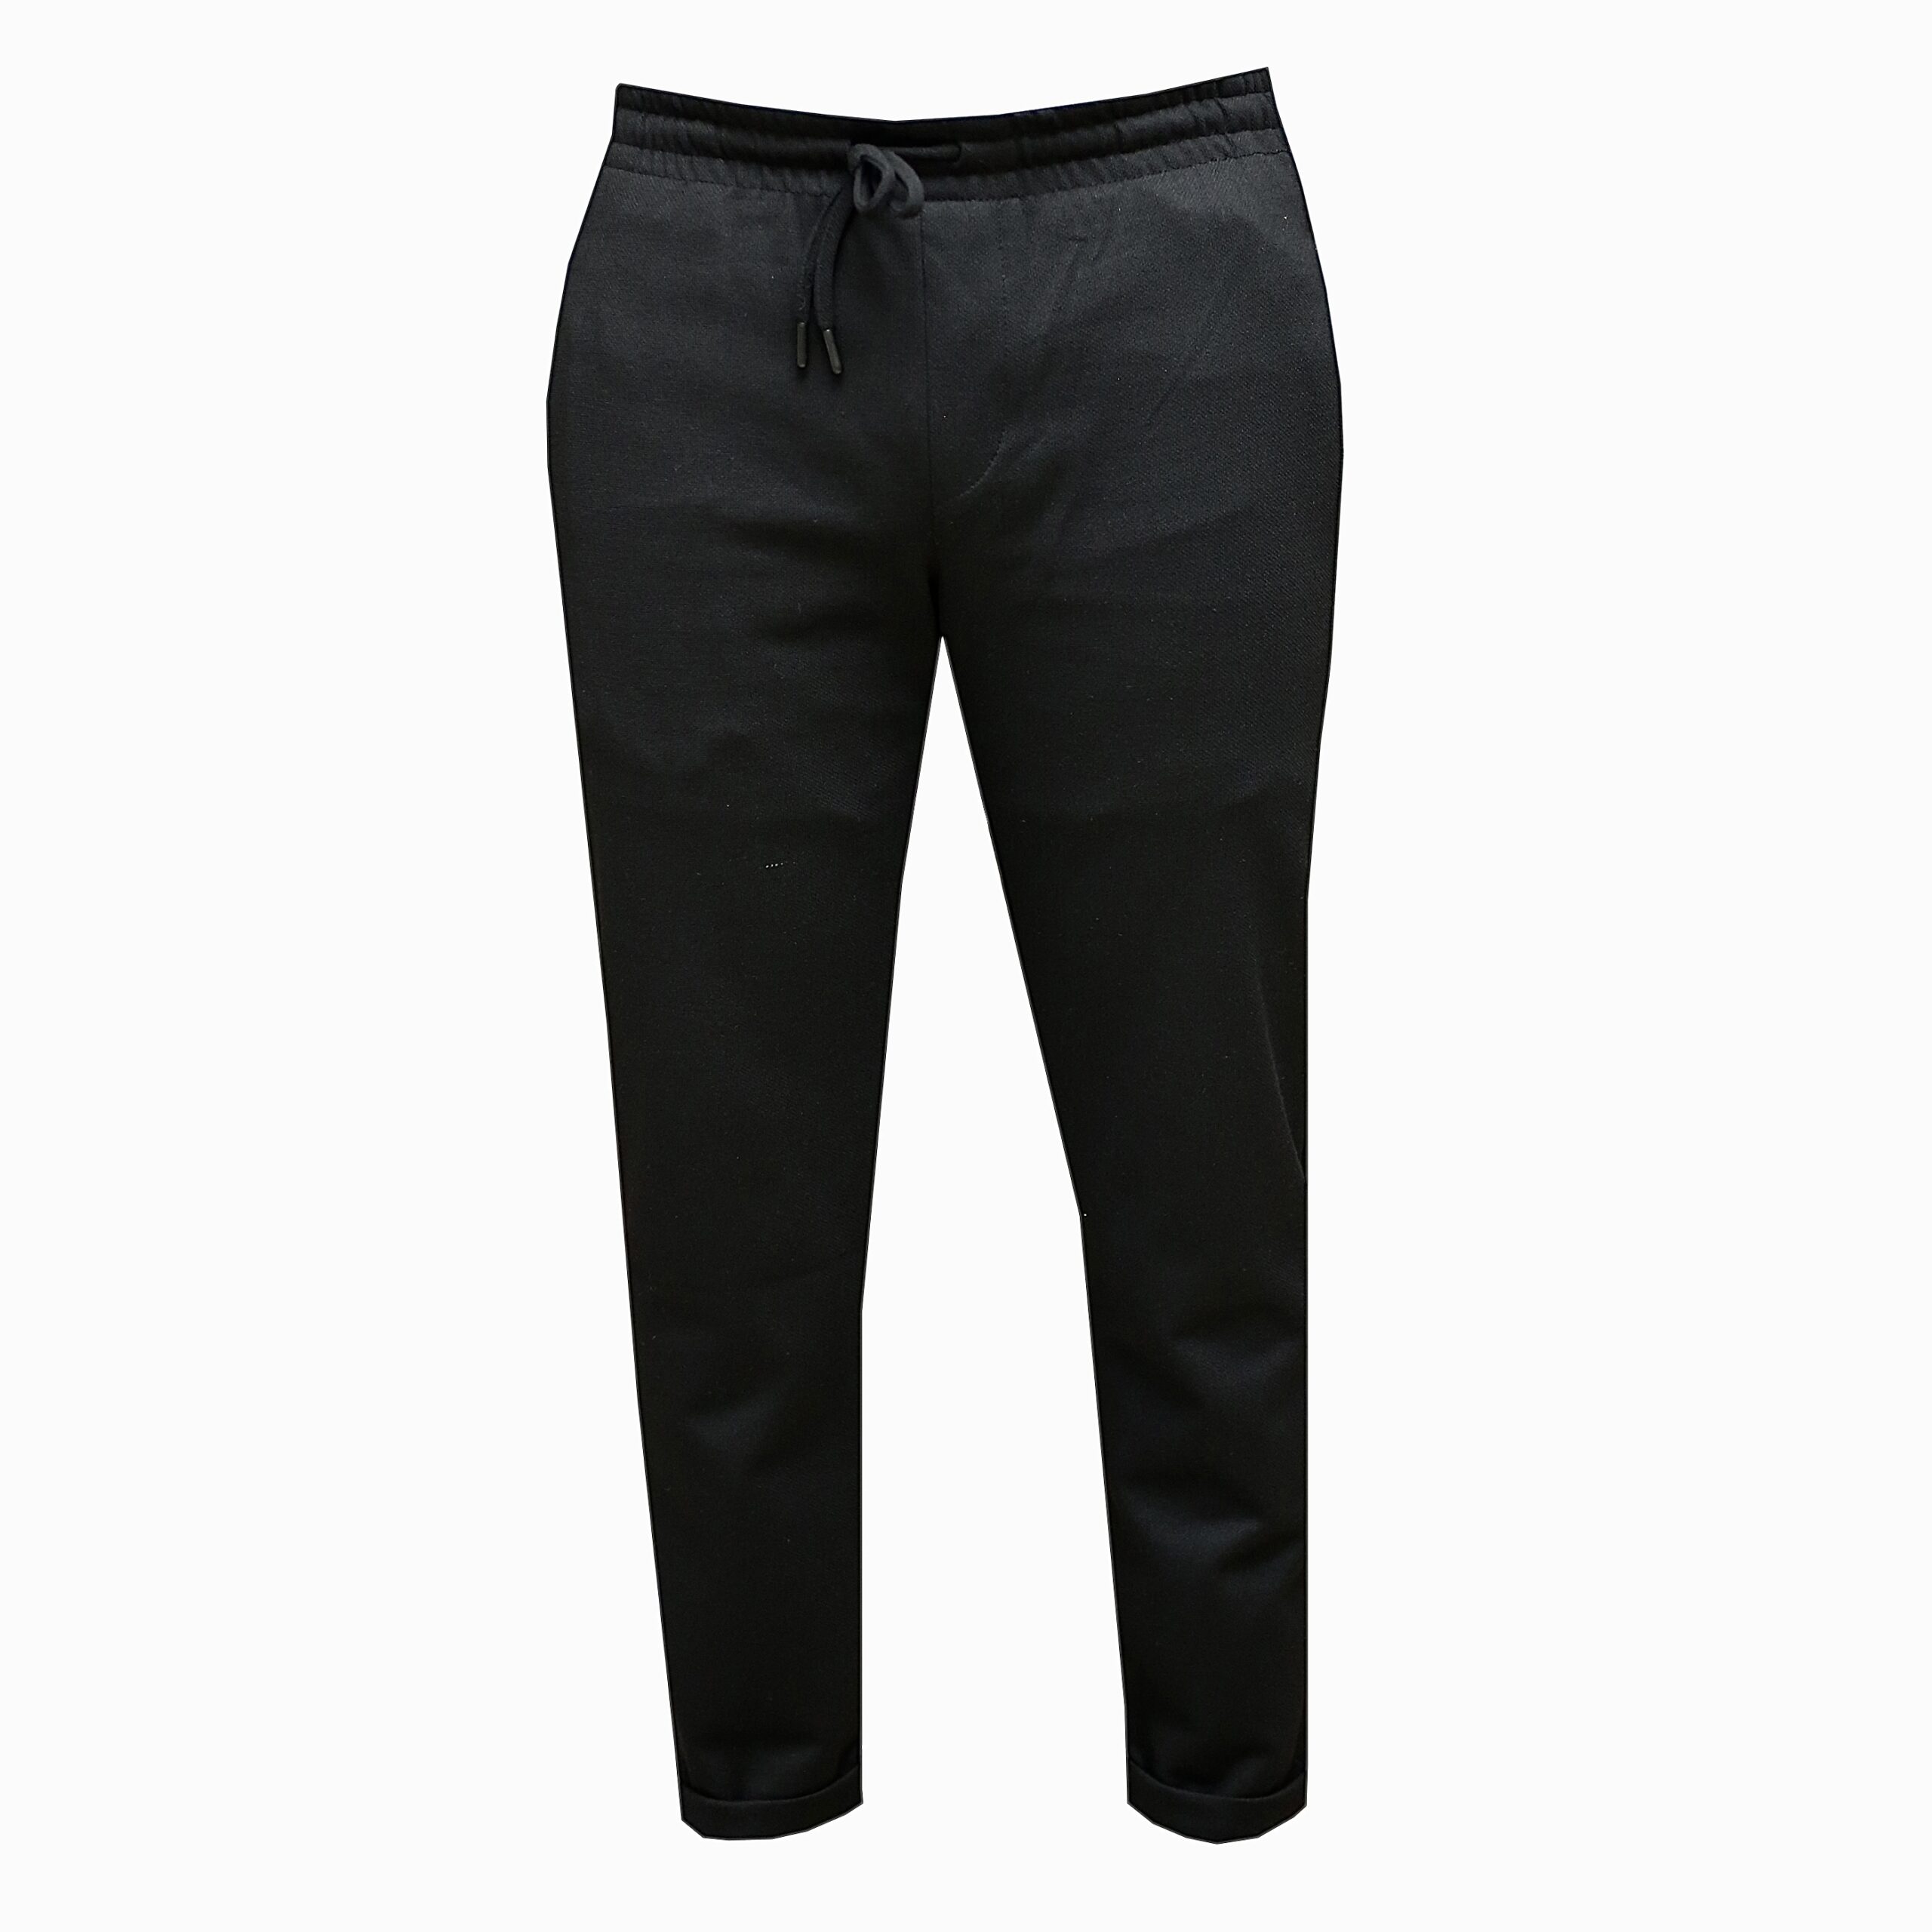 Black Sweatpants for Men - Men's Casual Pants - Sweat Pants. Online Shopping in Uganda